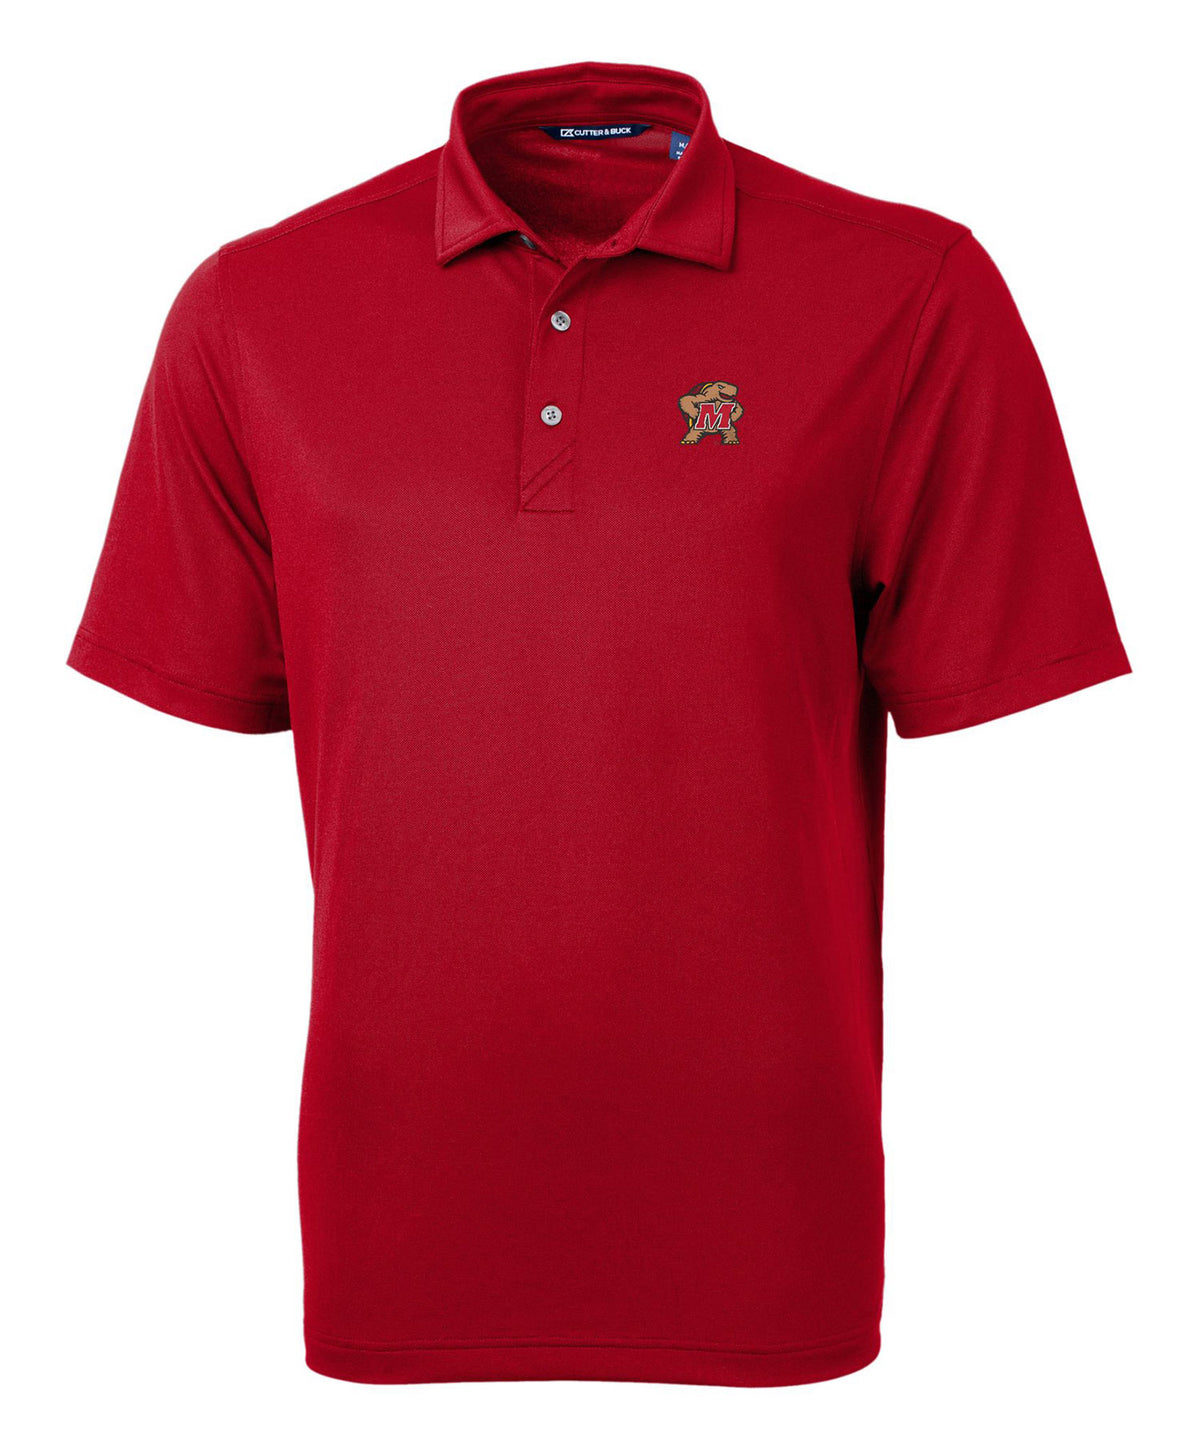 Cutter & Buck University of Maryland Terrapins Short Sleeve Polo Knit Shirt, Men's Big & Tall